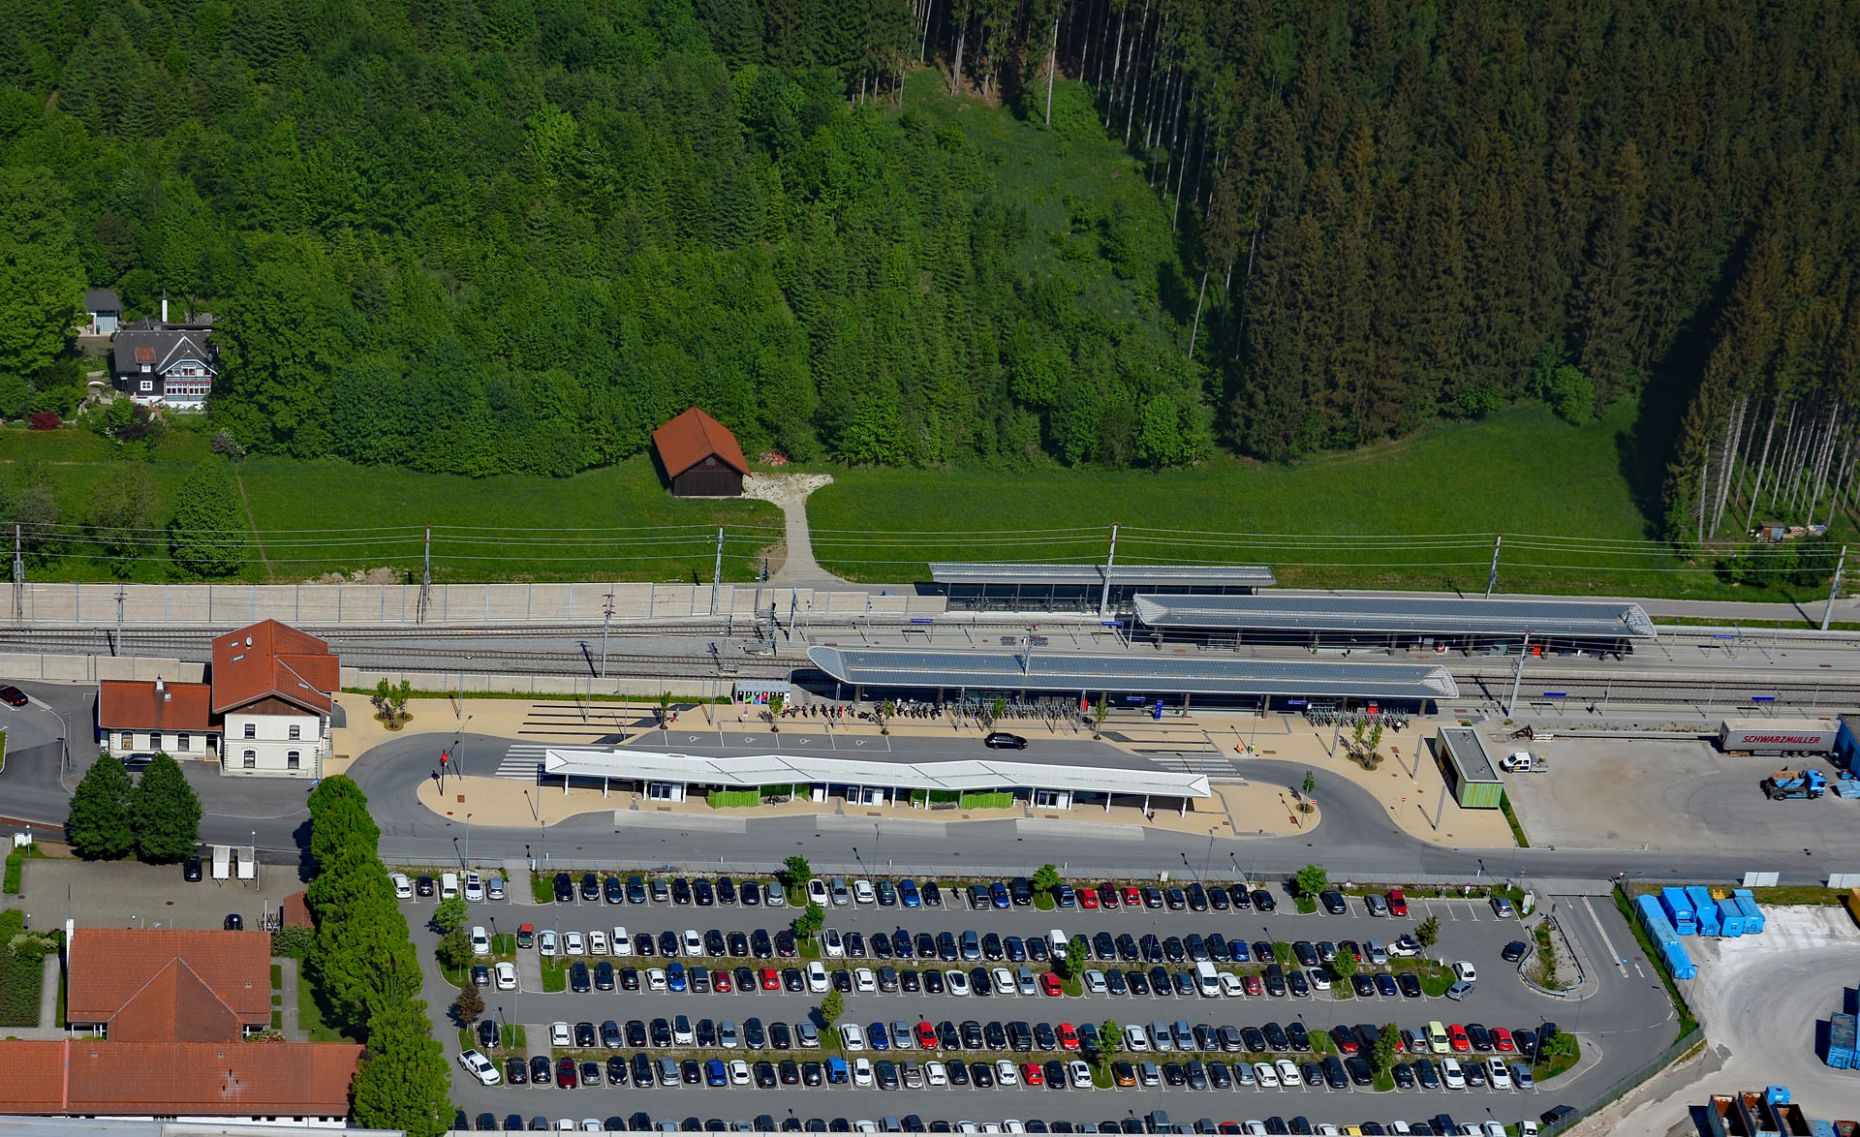 Die Abbildung zeigt eine Luftaufnahme der Haltestelle 4.0 in Neumarkt am Wallersee